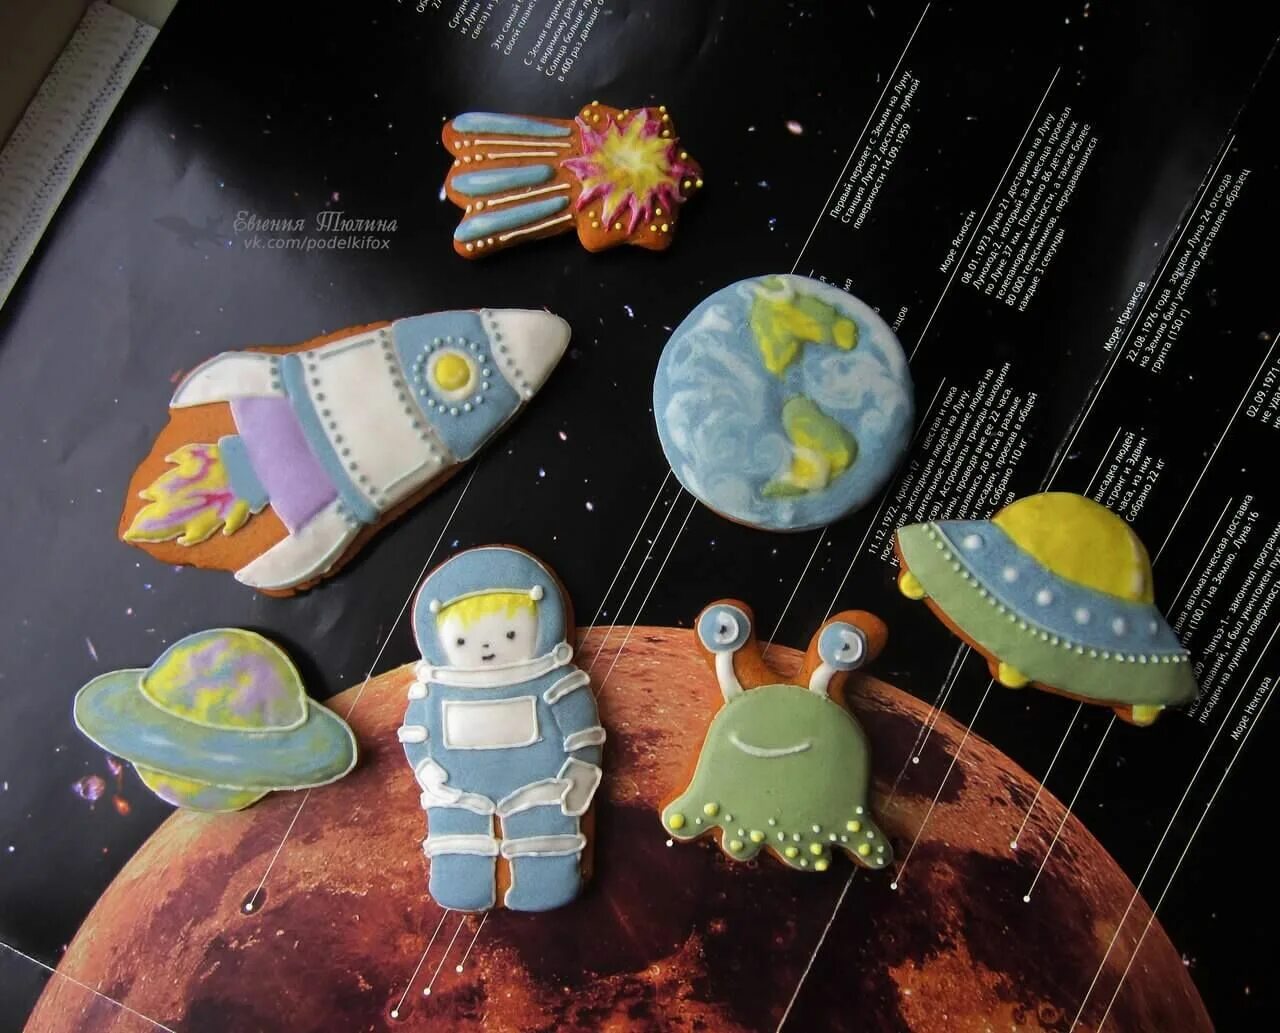 Поделка в сад 12 апреля день космонавтики. Поделки на космическую тему. Поделка космос в детский сад. Поделка ко Дню космонавтики. Космические поделки для детского сада.